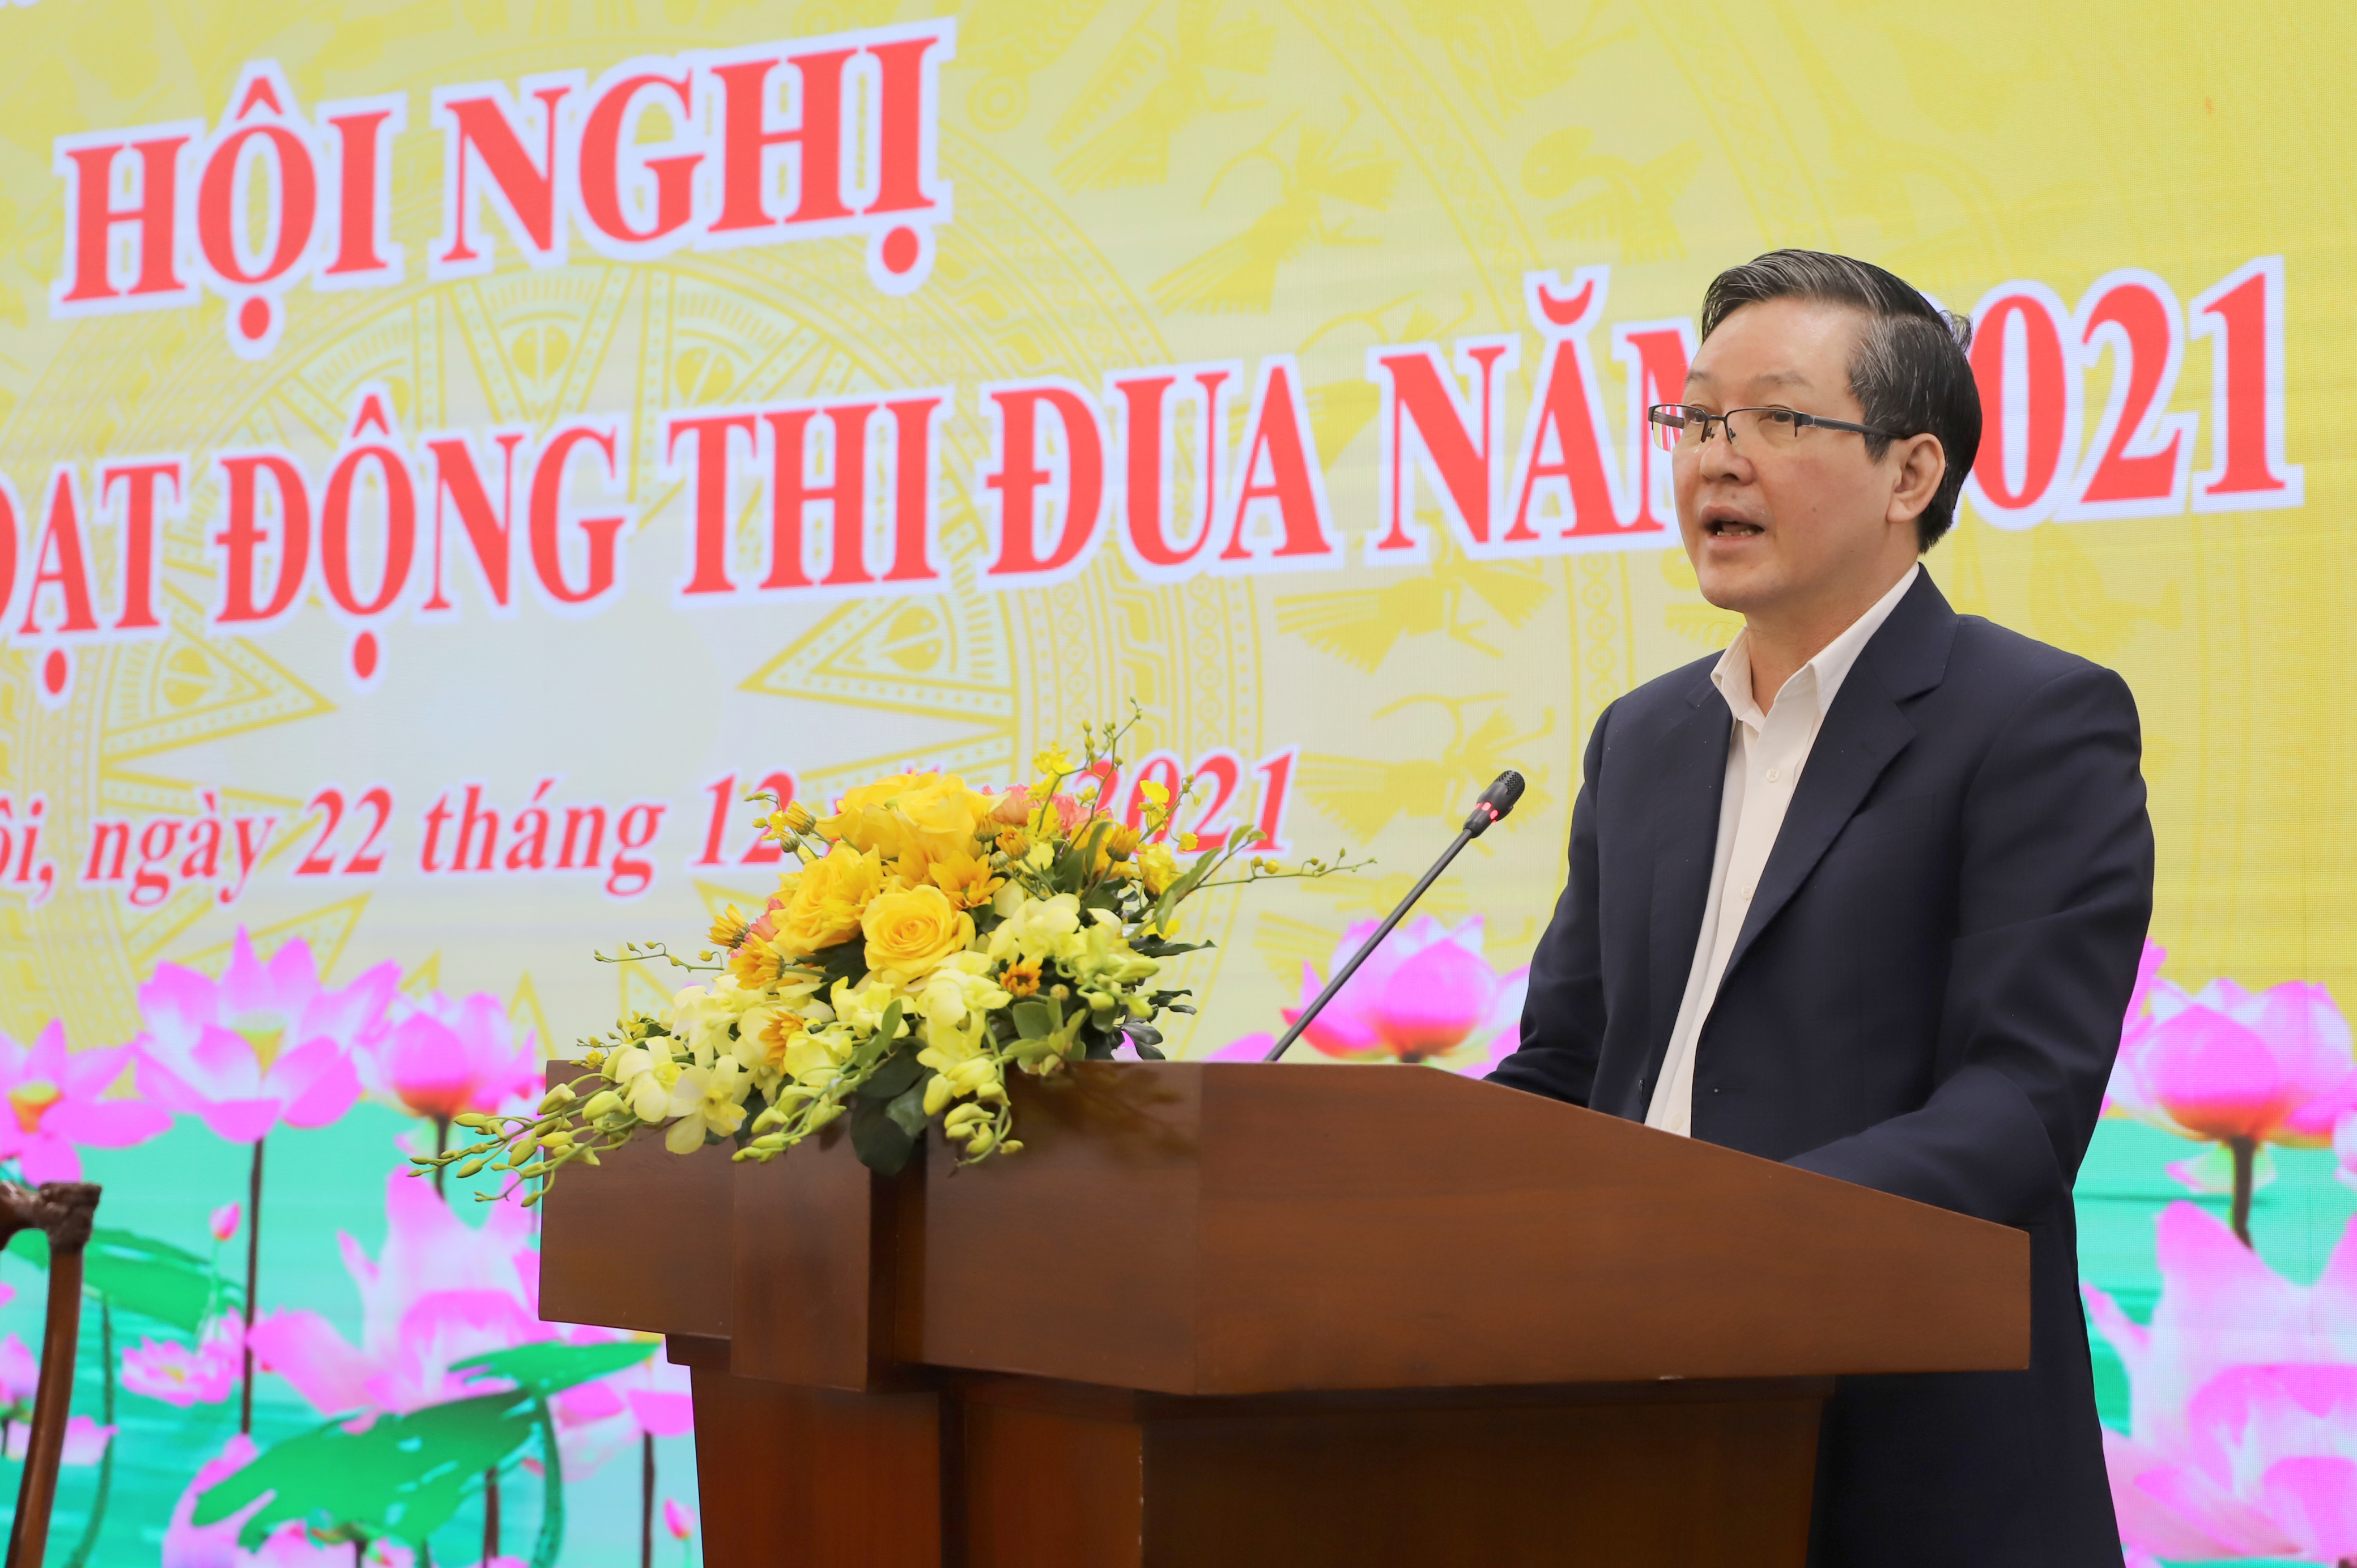 Ông Lương Quốc Đoàn, Chủ tịch Trung ương Hội Nông dân Việt Nam phát biểu tại Hội nghị.